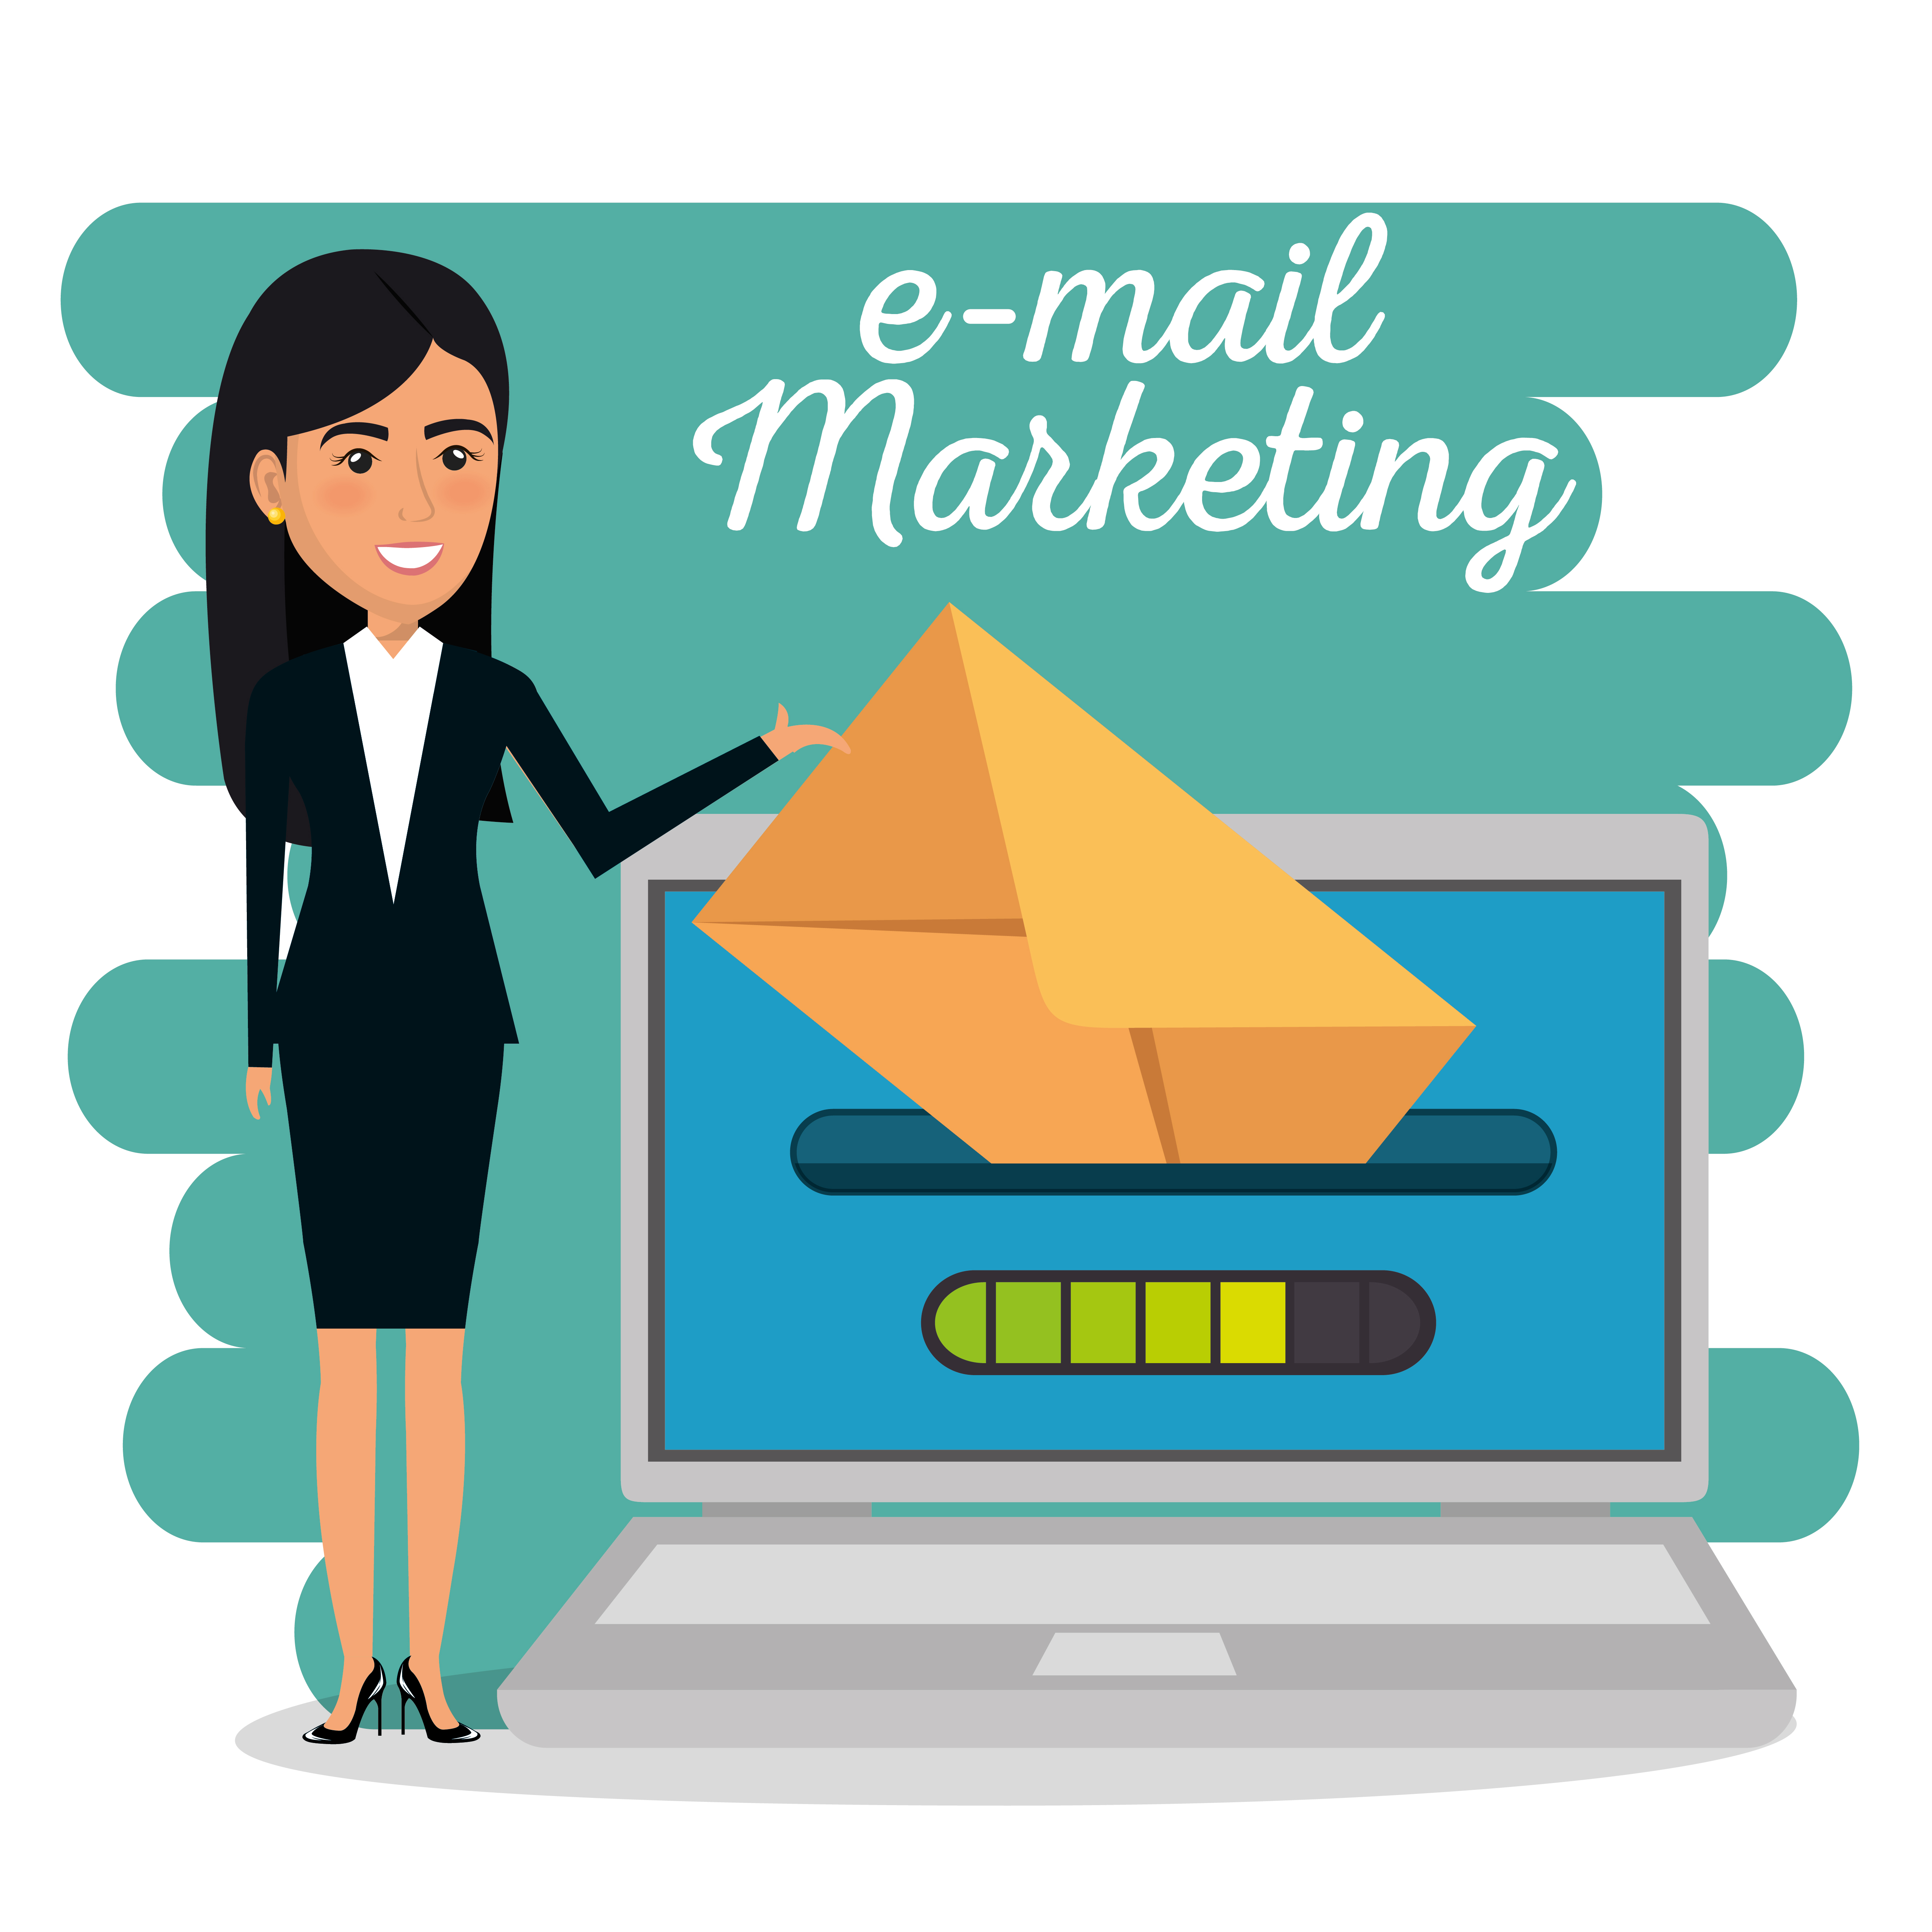 Tendances de l’email marketing : Personnalisation, automatisation et engagement optimal